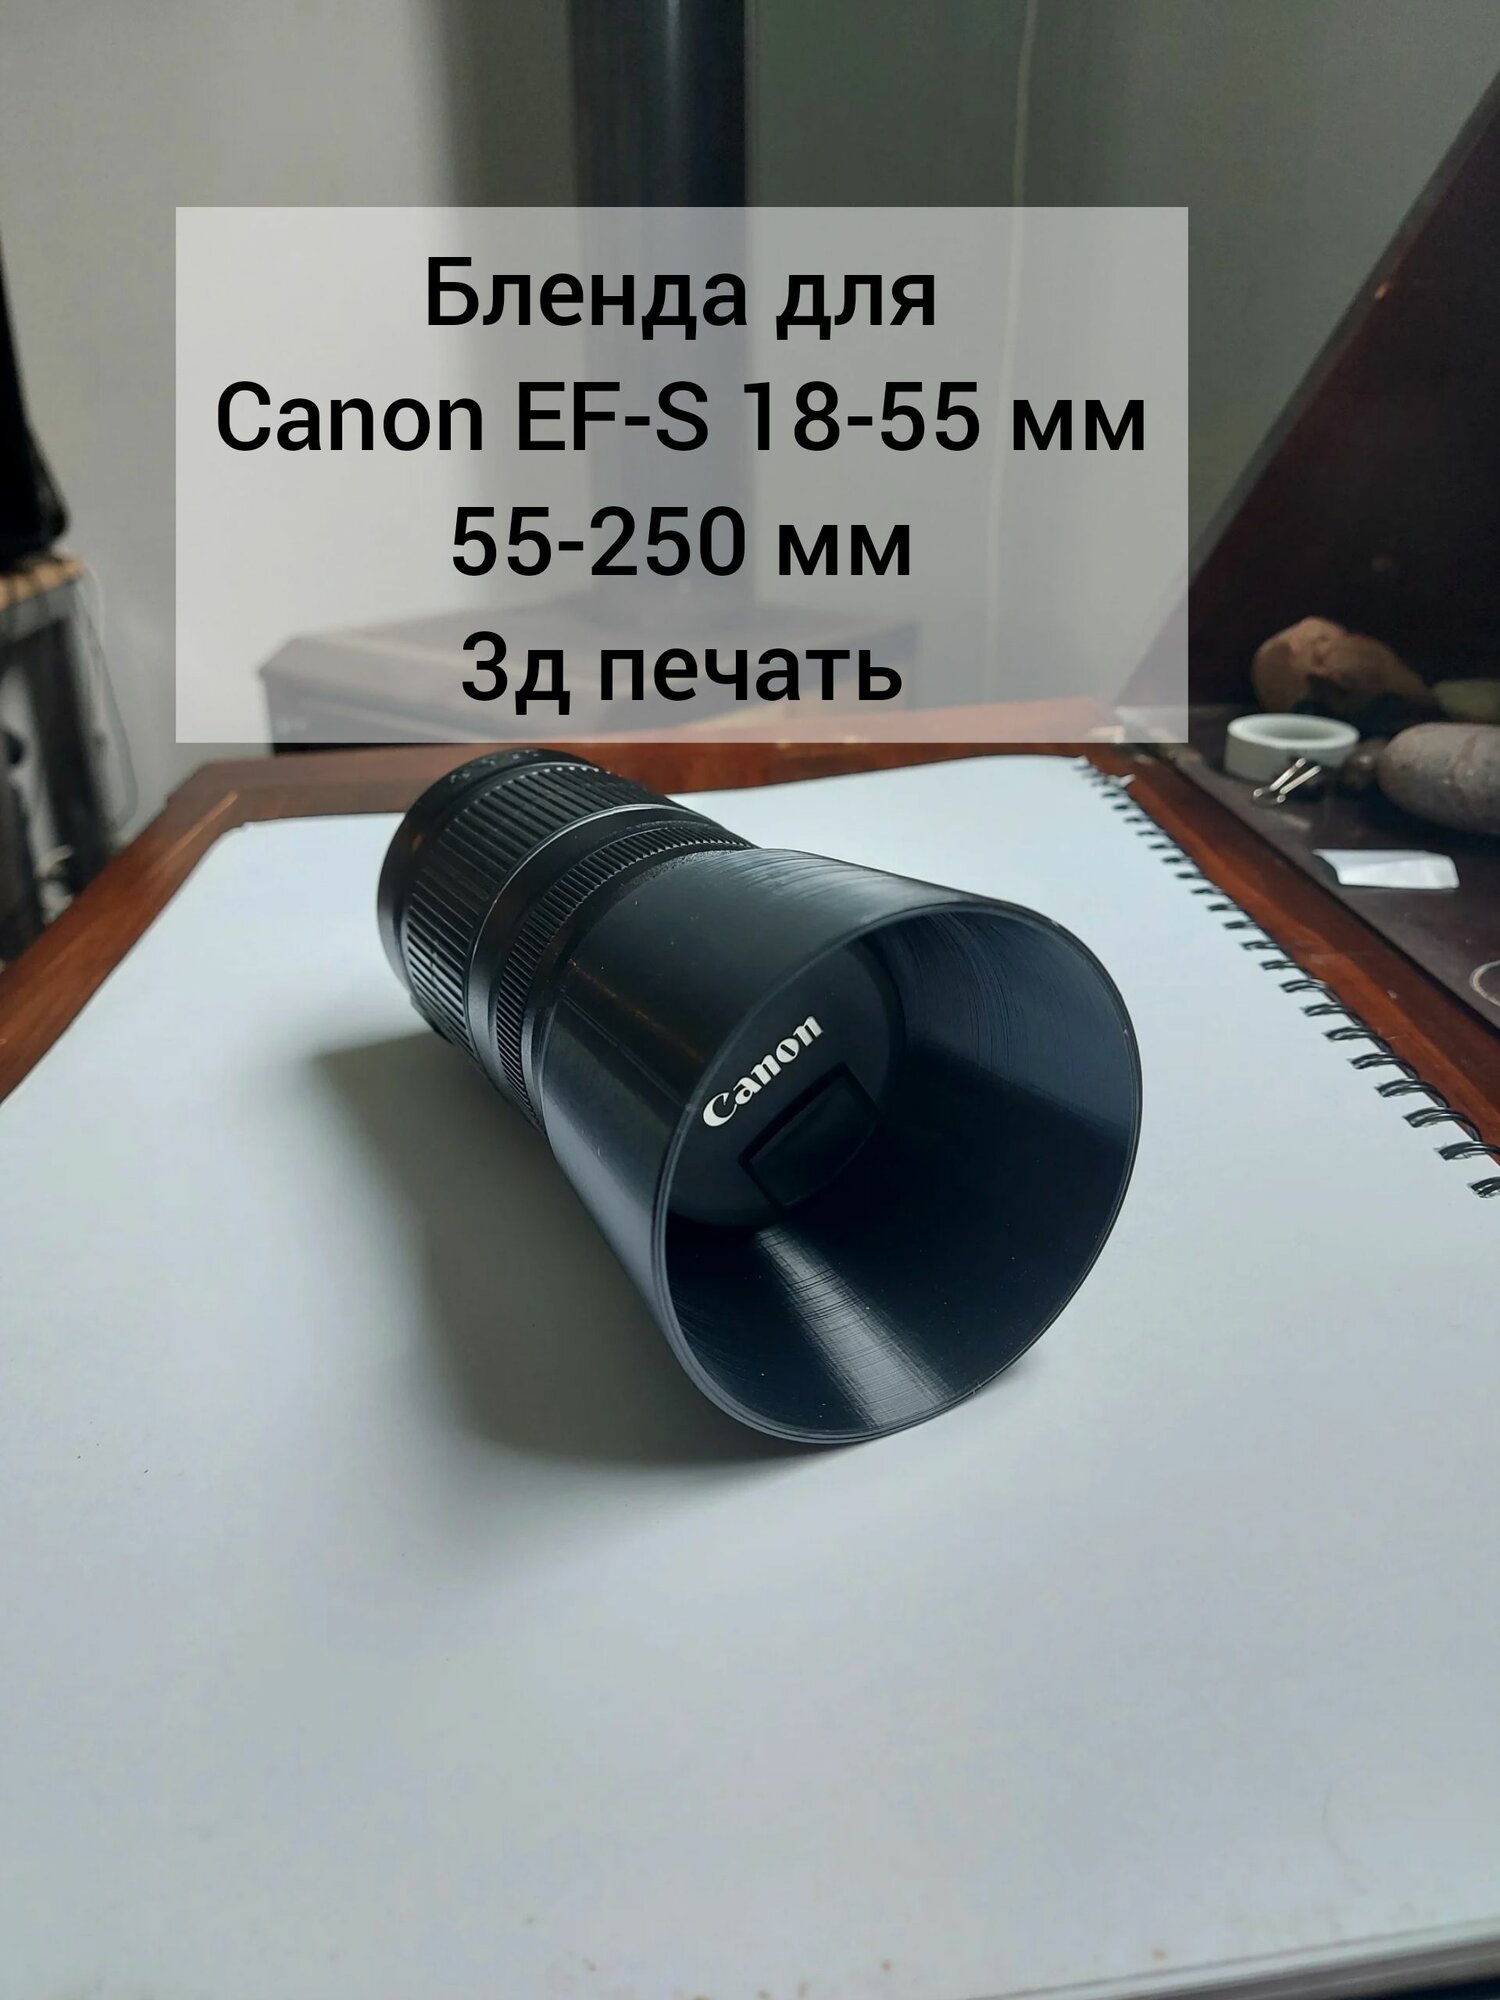 Бленда объектива Canon EF-S 18-55 мм и 55-250 мм.